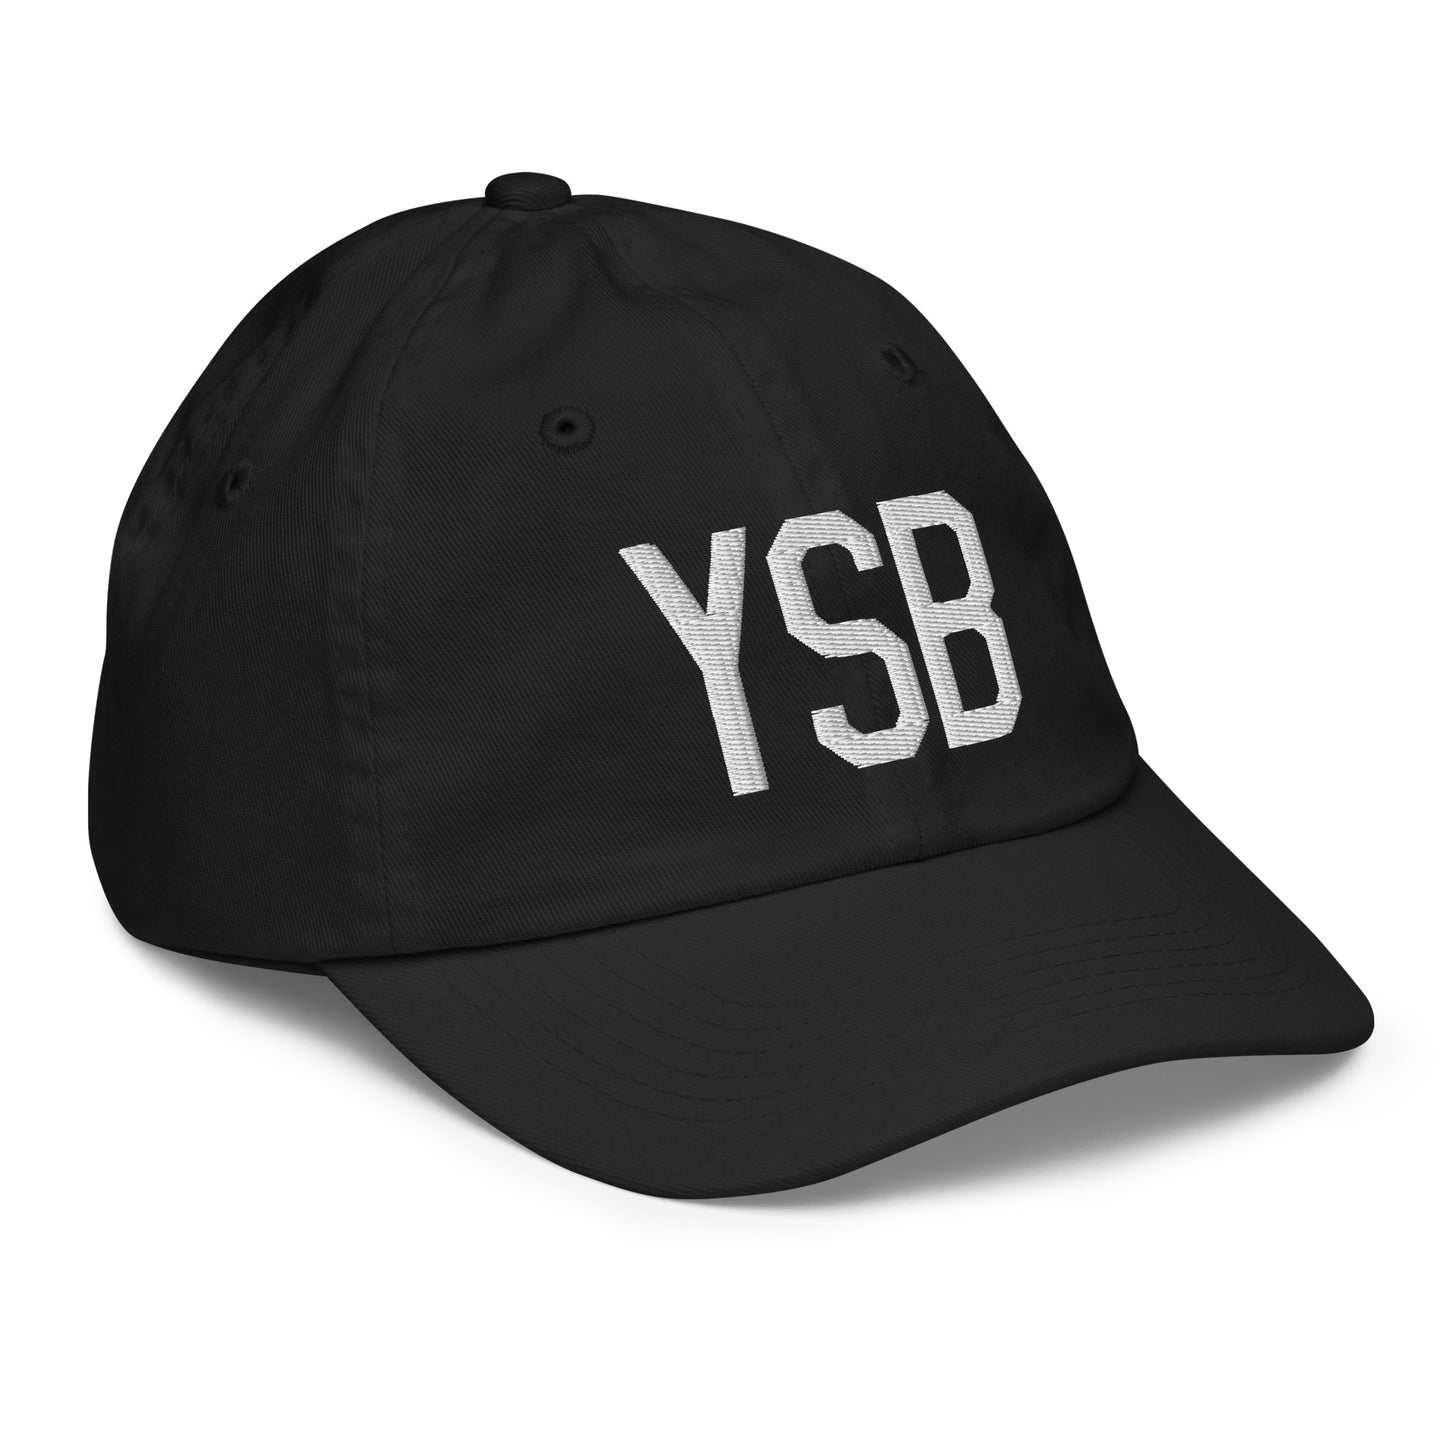 Airport Code Kid's Baseball Cap - White • YSB Sudbury • YHM Designs - Image 12